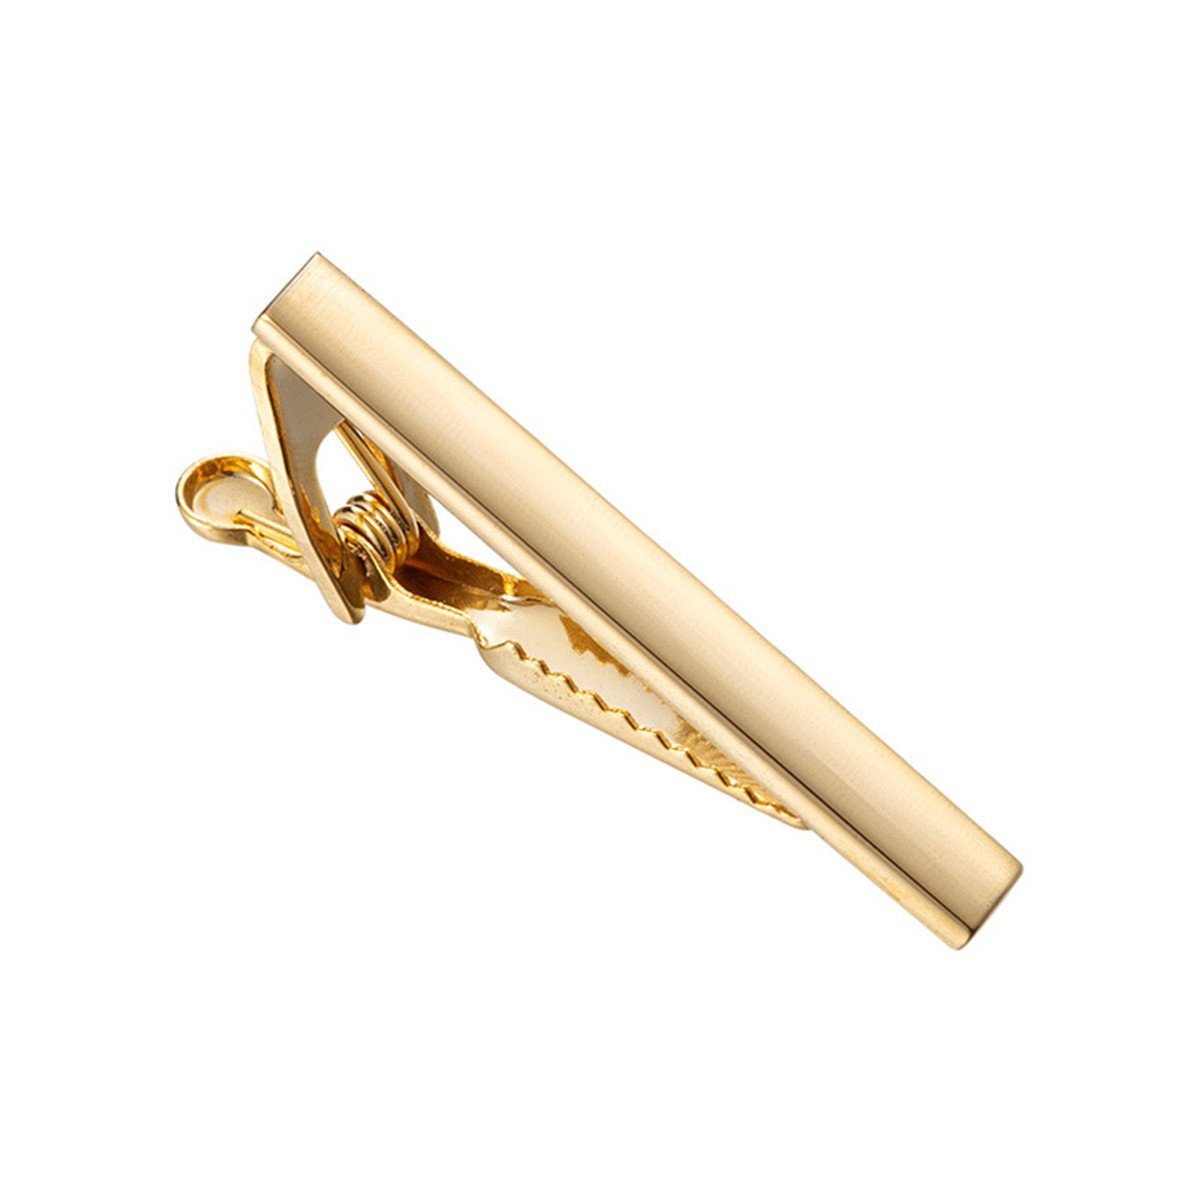 TUABUR 4 cm lange Krawattenklammer für Herren, geeignet für normale Krawatten Lederpflegeset Gold